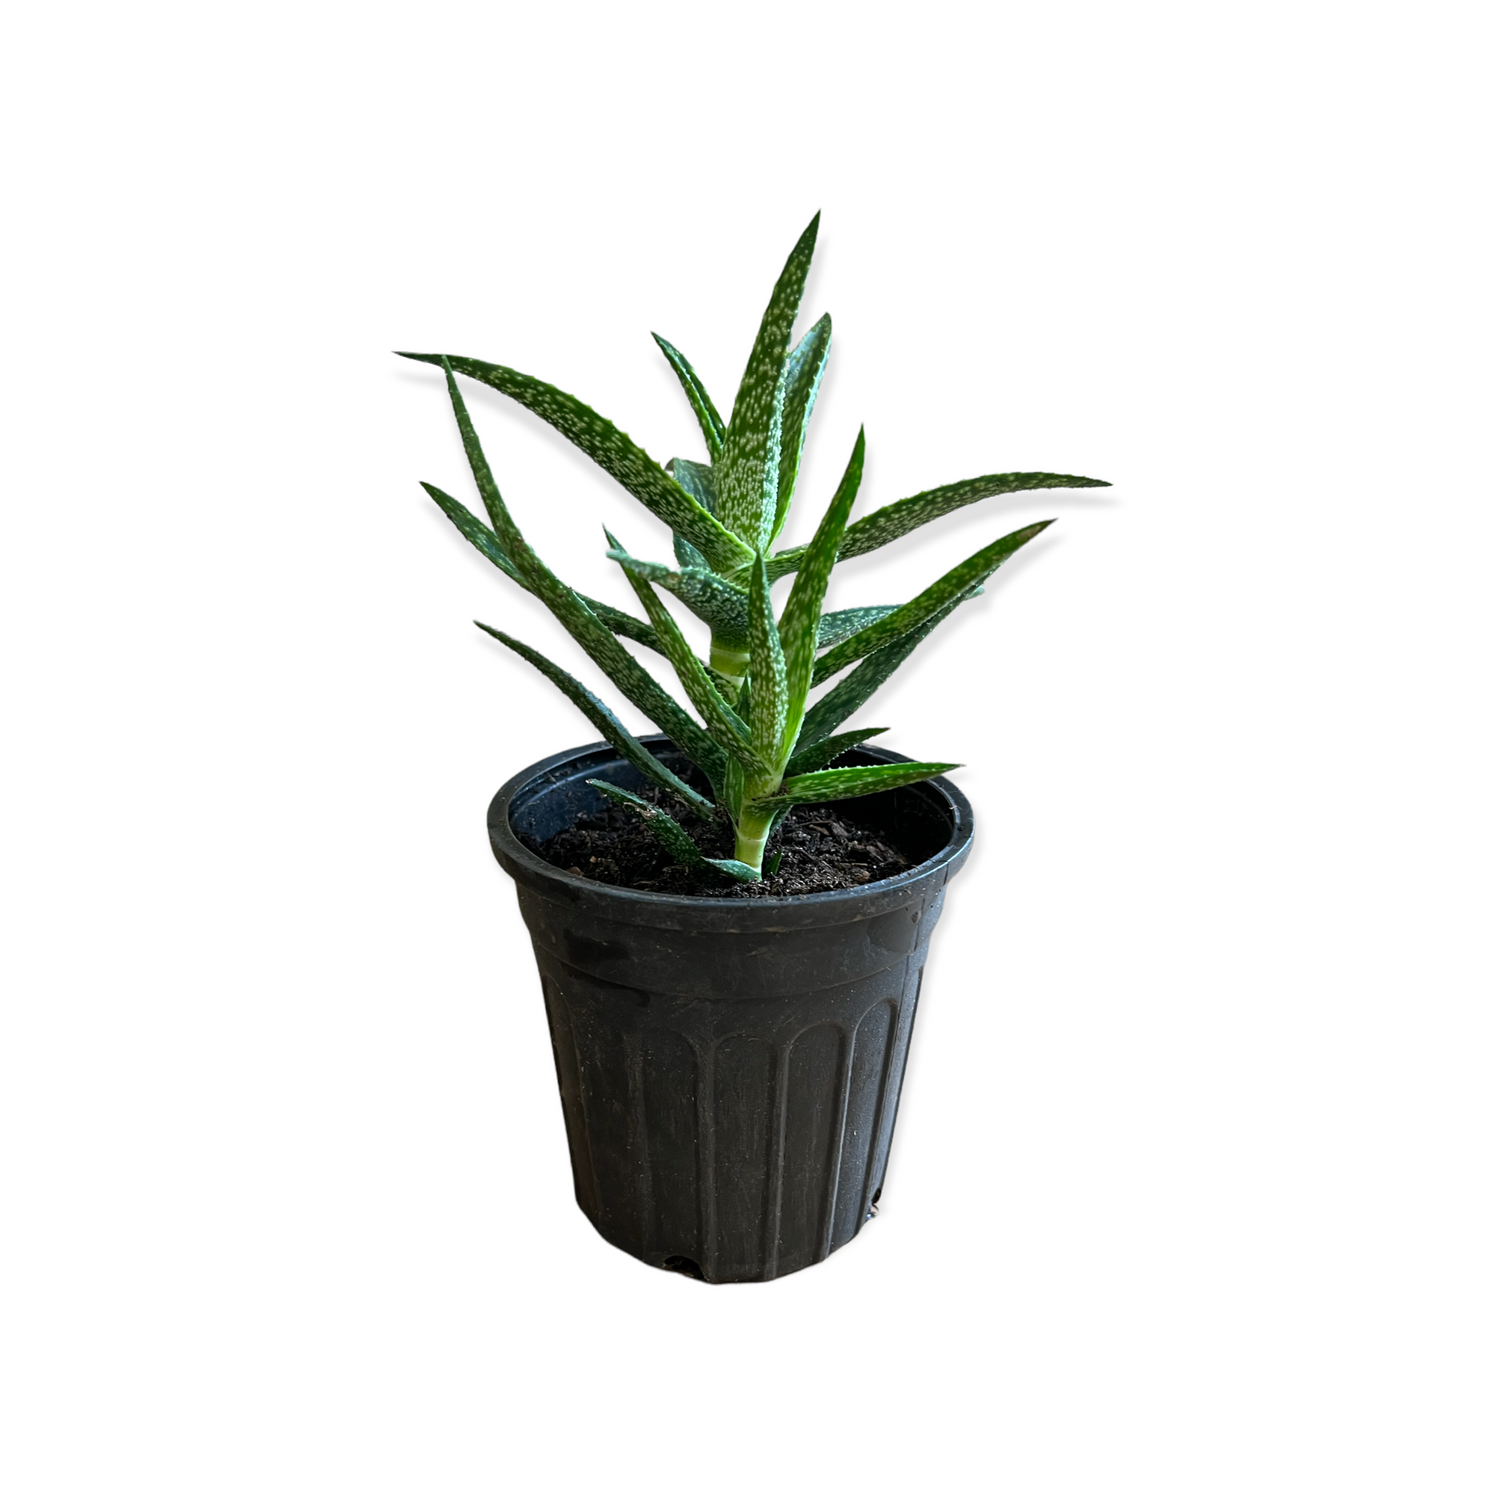 Climbing Aloe Variegated Succulent Live Plant Ez Growing Plants 9131